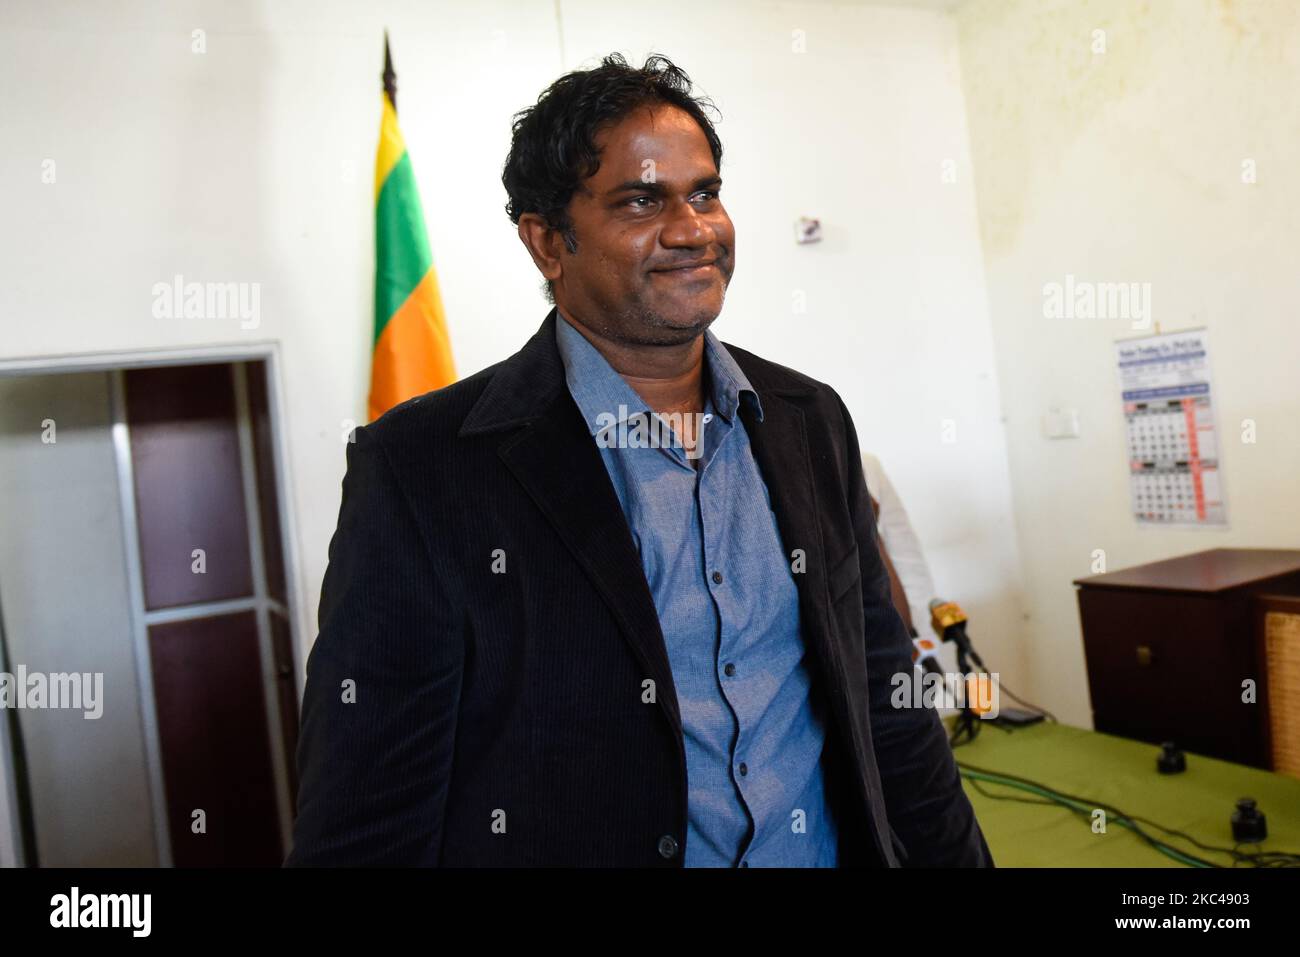 Nuwan Zoysa, ehemaliger Schnellbowler und Bowlingtrainer aus Sri Lanka, verlässt die Pressekonferenz in Colombo am 20. November 2020 plädierte der Internationale Cricket Council (ICC) auf nicht schuldig wegen der Anklagepunkte zur Matchfixierung und versprach, seine Unschuld zu verteidigen. (Foto von Akila Jayawardana/NurPhoto) Stockfoto